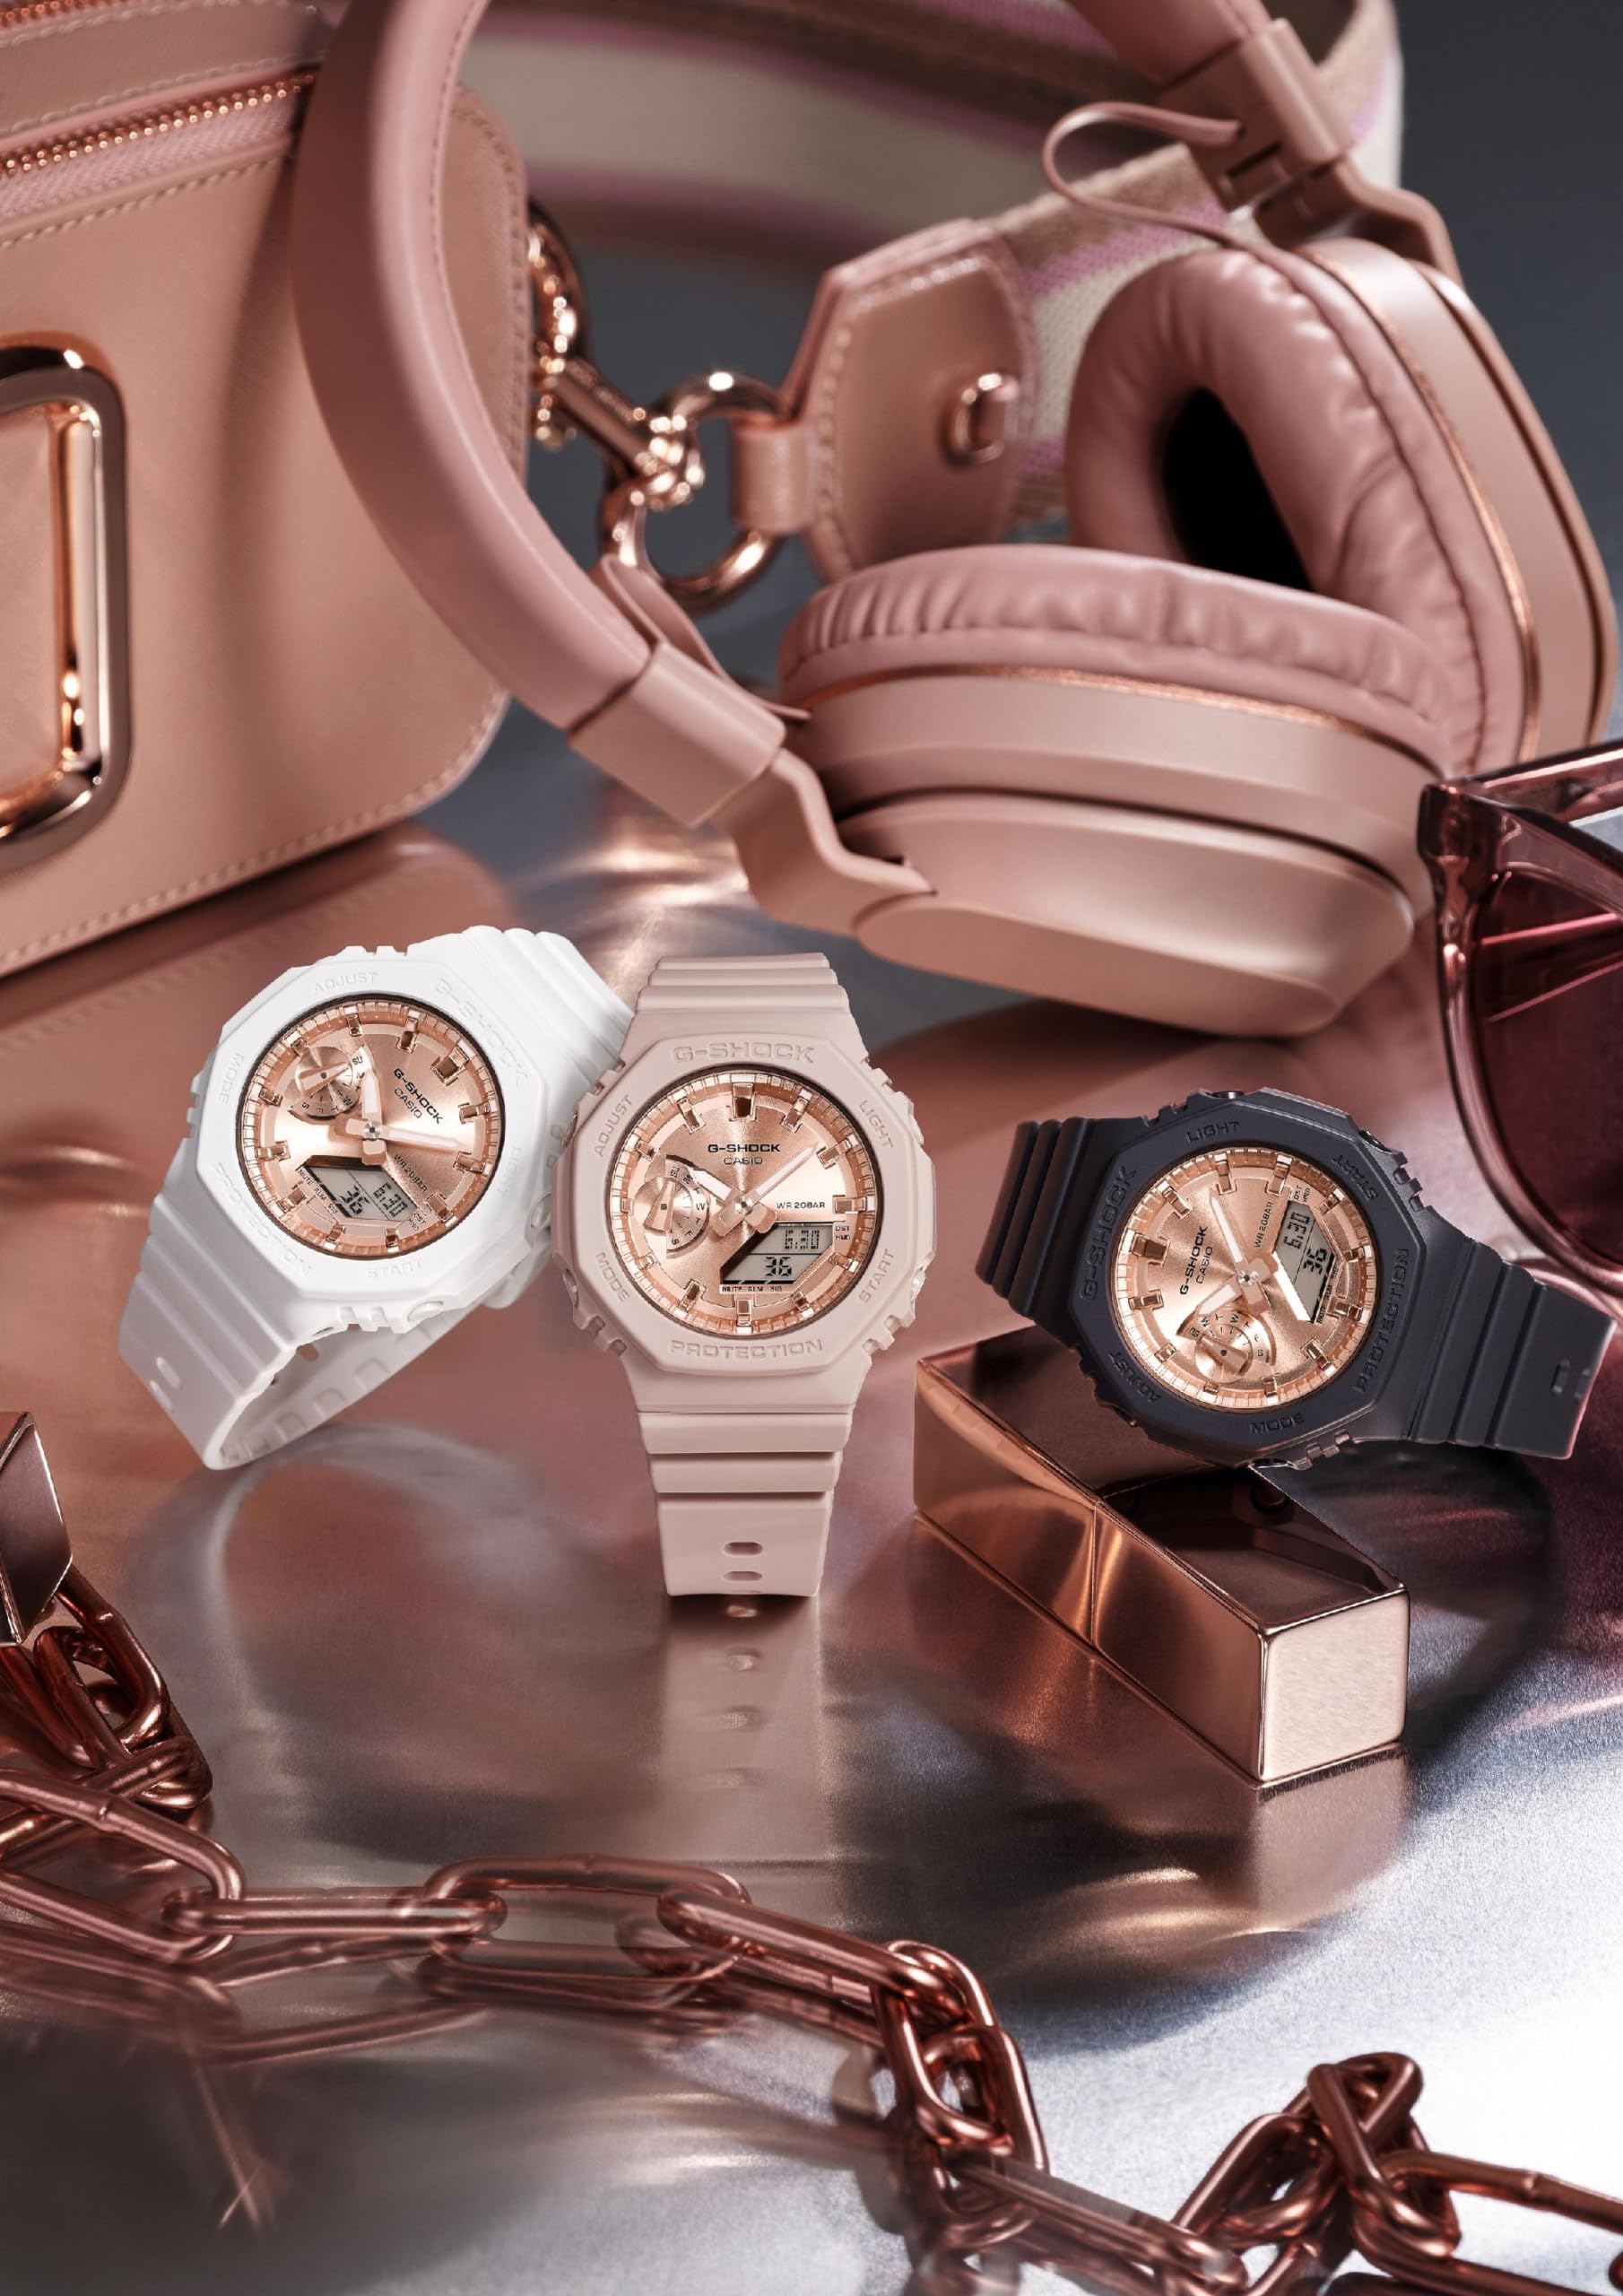 [カシオ] 腕時計 ジーショック 【国内正規品】 ミッドサイズモデル GMA-S2100MD-7AJF レディース ホワイト - BanzaiHobby